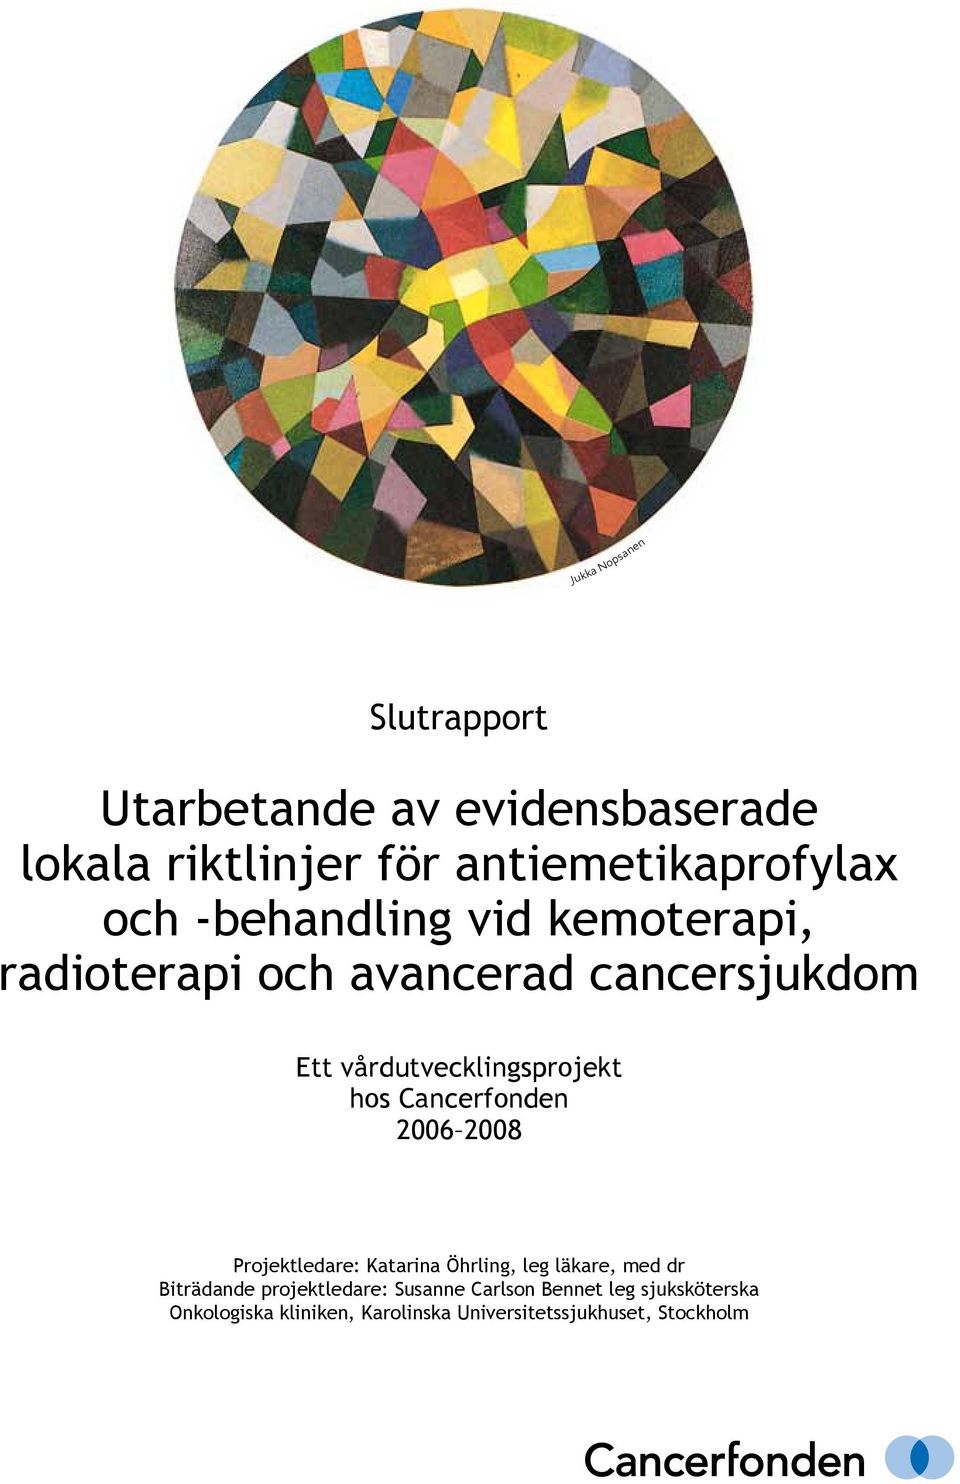 Cancerfonden 2006 2008 Projektledare: Katarina Öhrling, leg läkare, med dr Biträdande projektledare: